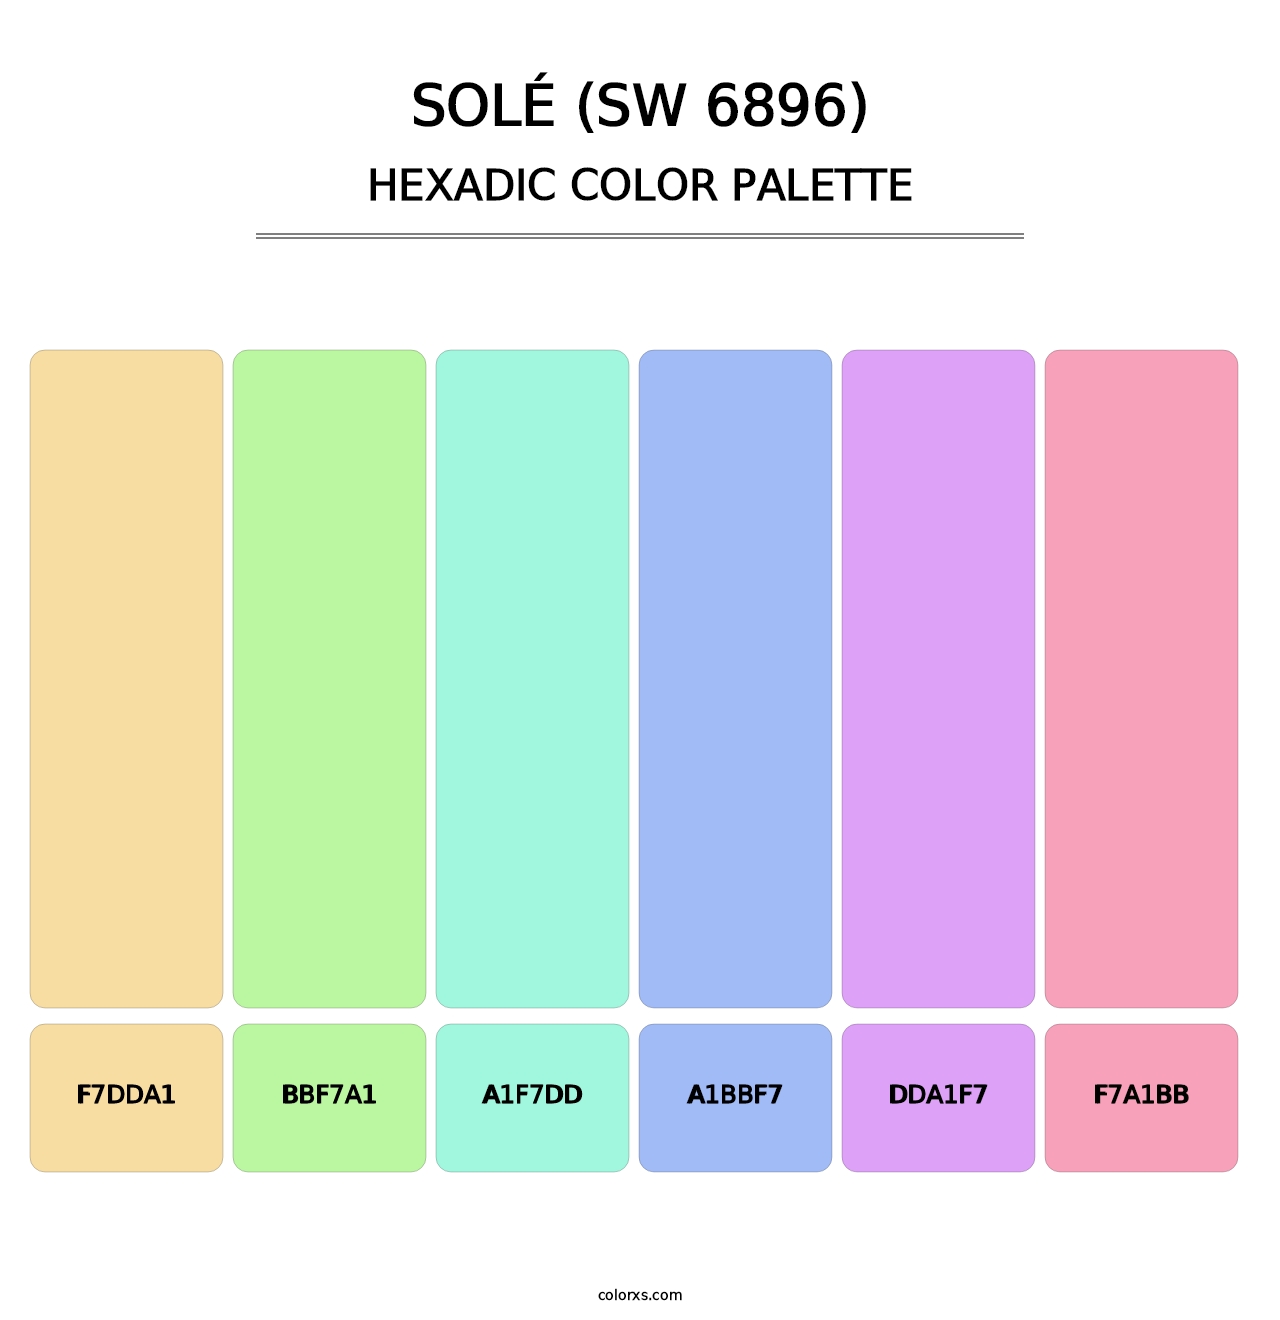 Solé (SW 6896) - Hexadic Color Palette